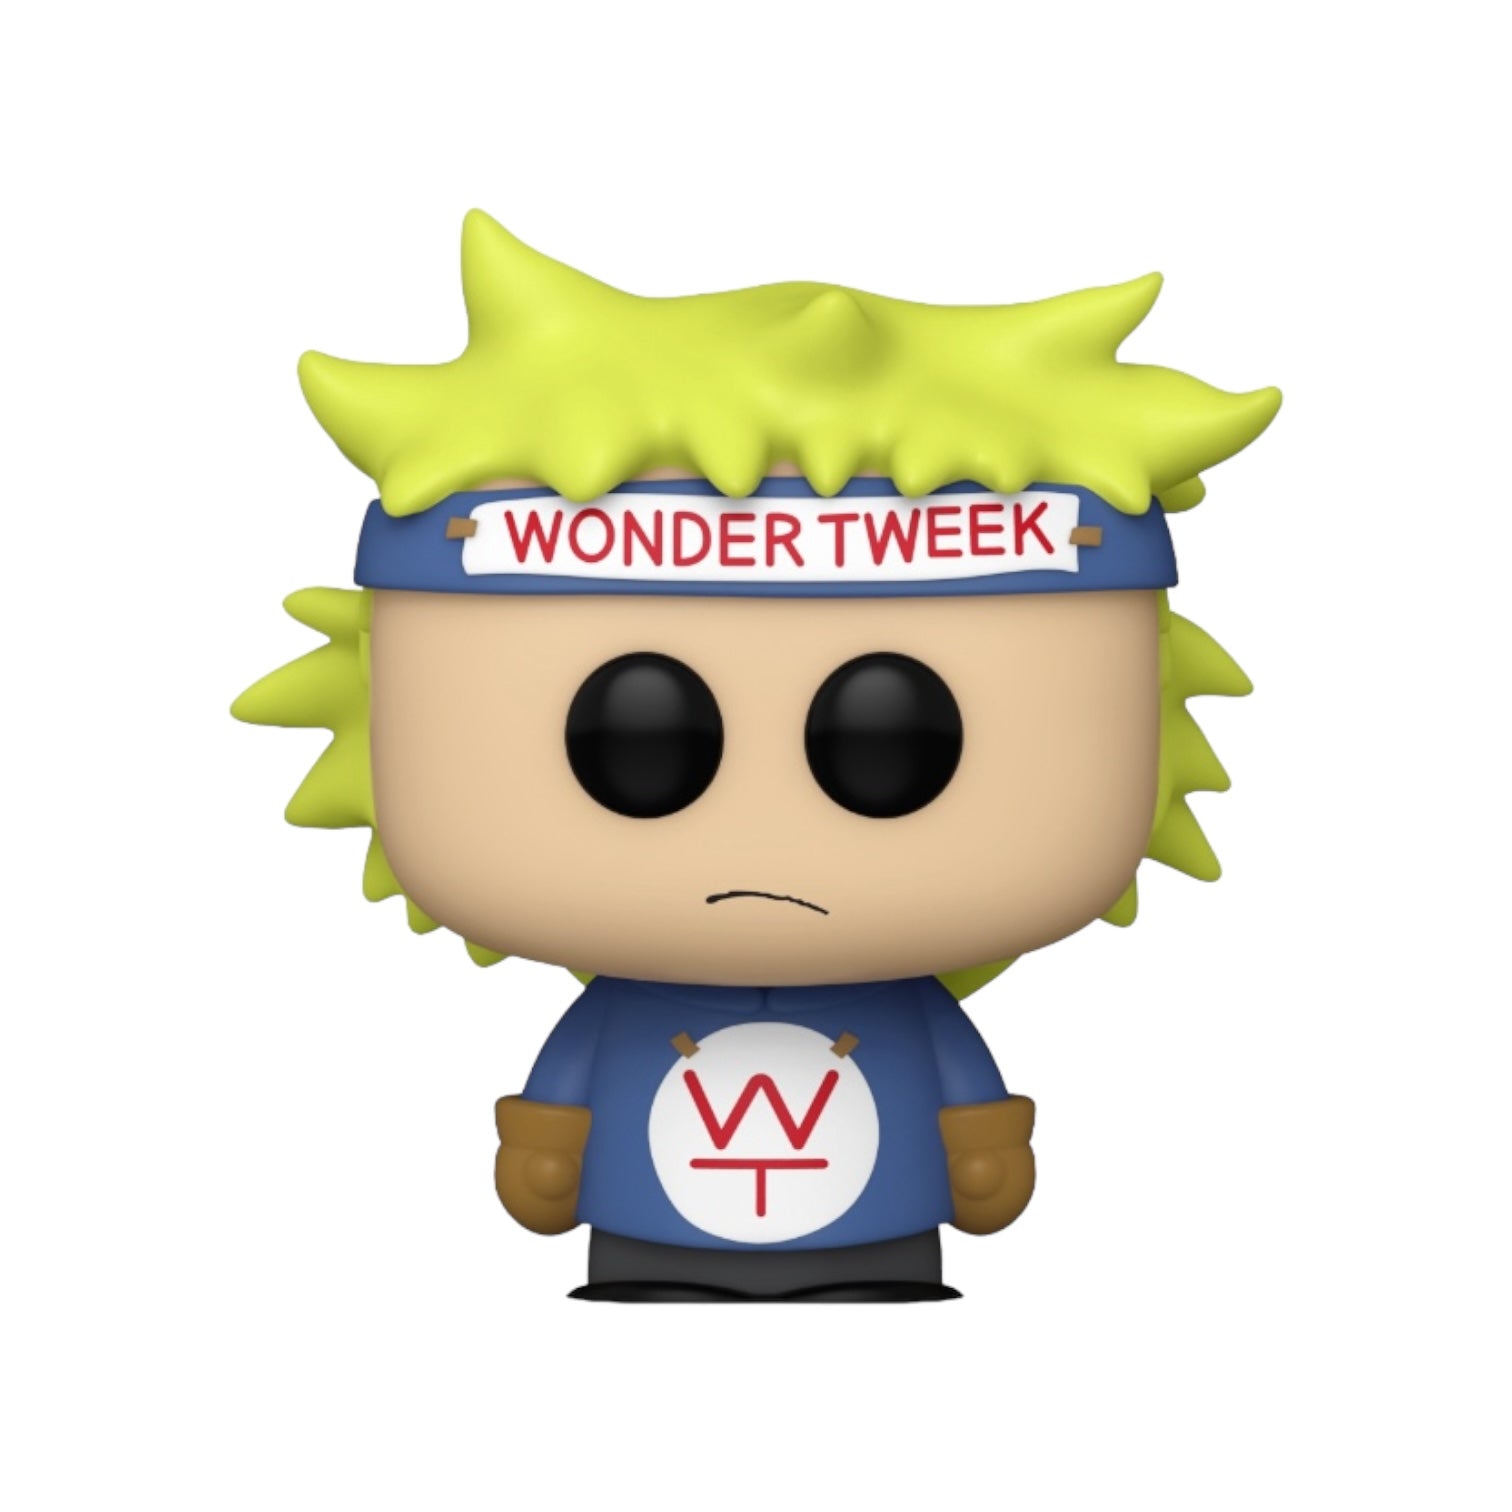 Wonder Tweek #1472 Funko Pop! - South Park